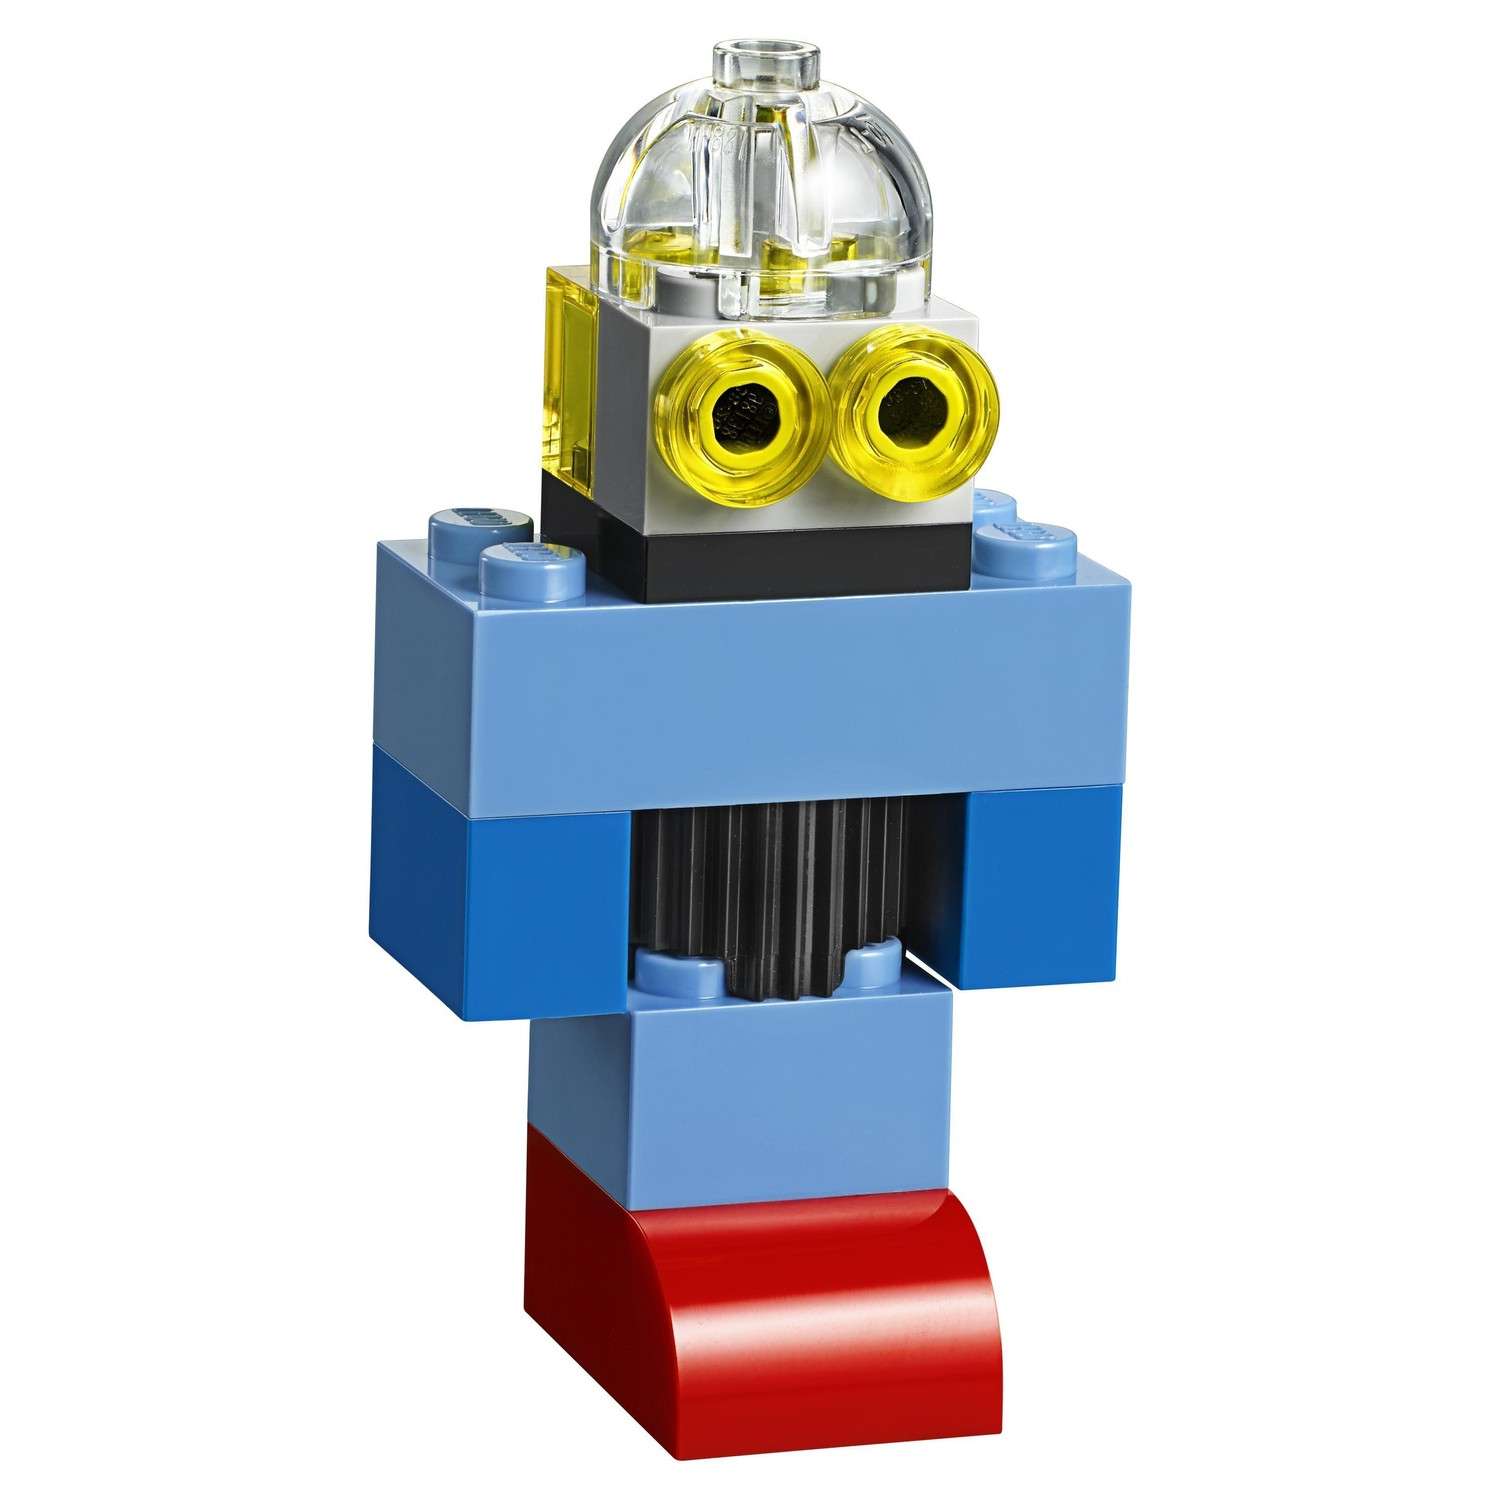 Конструктор LEGO Чемоданчик для творчества и конструирования Classic (10713) - фото 16